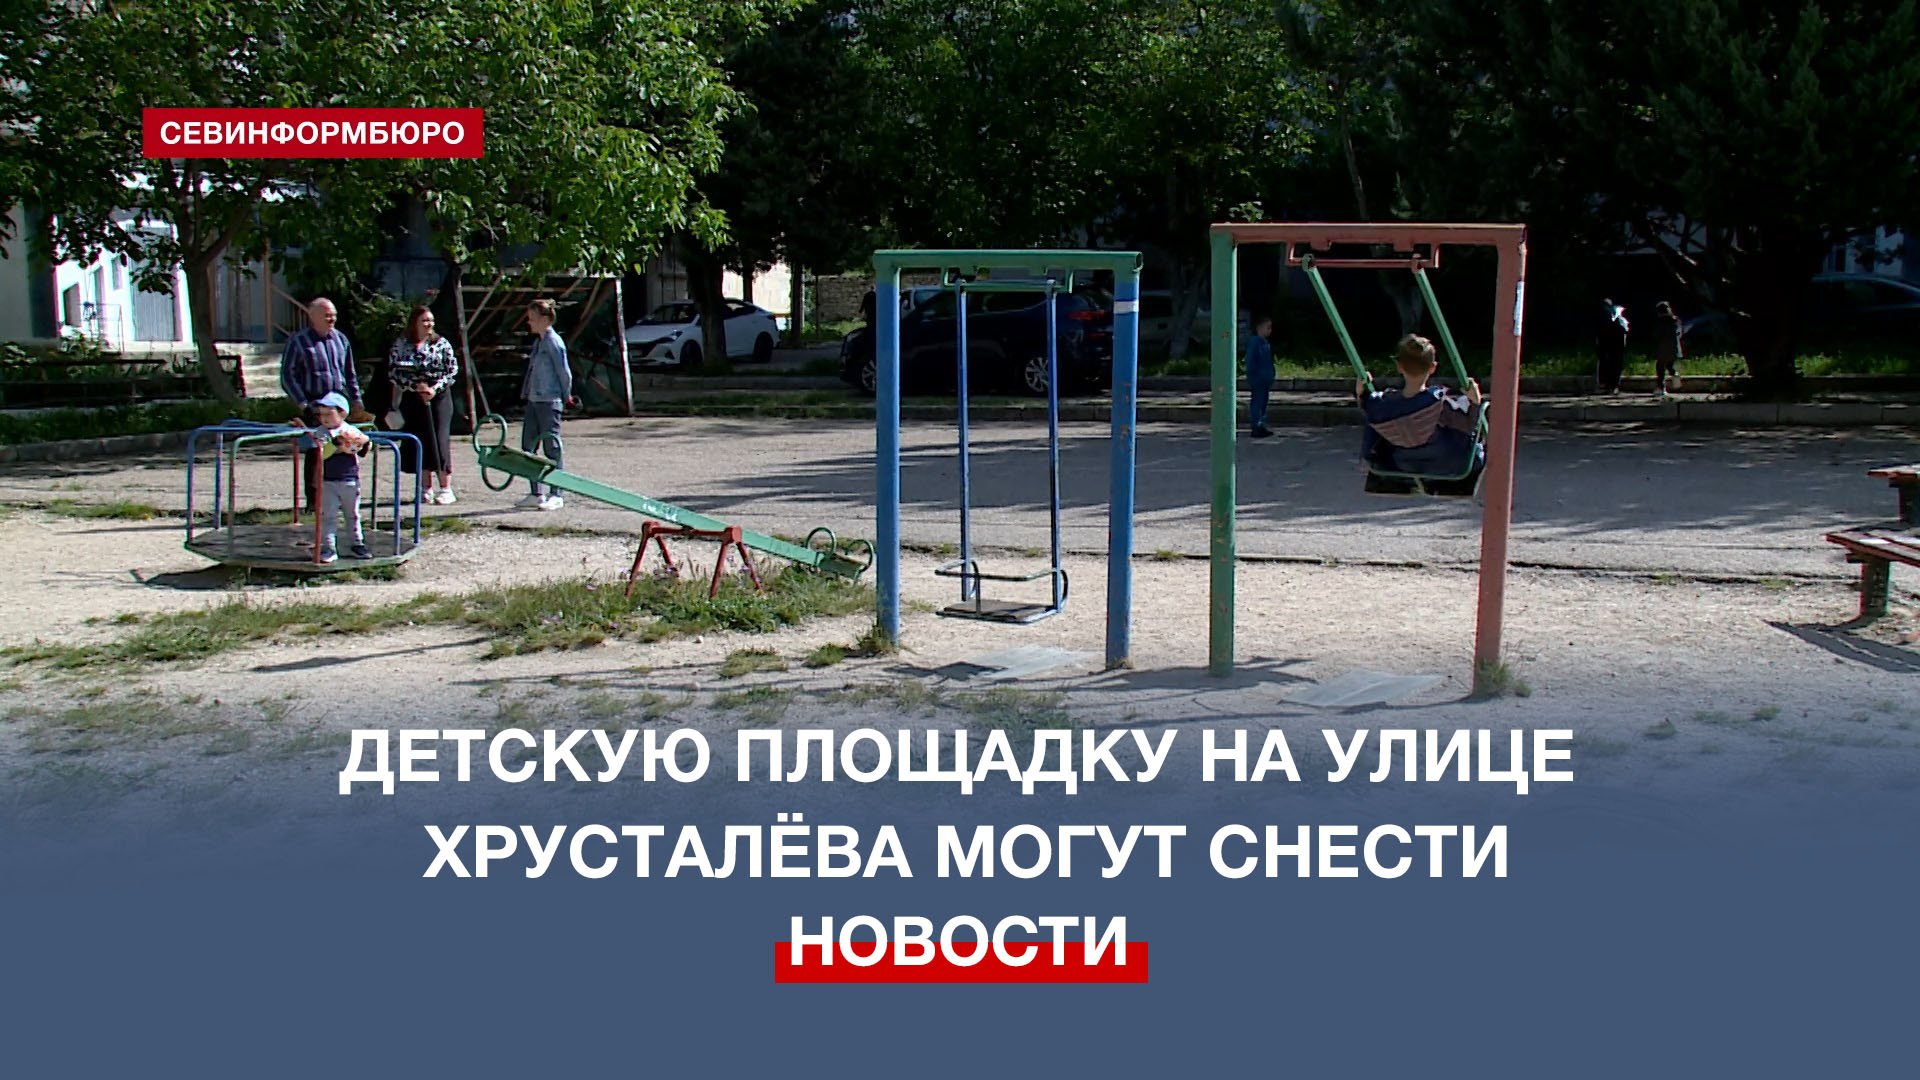 Против сноса детской площадки во дворе многоэтажки выступили жители улицы Хрусталёва